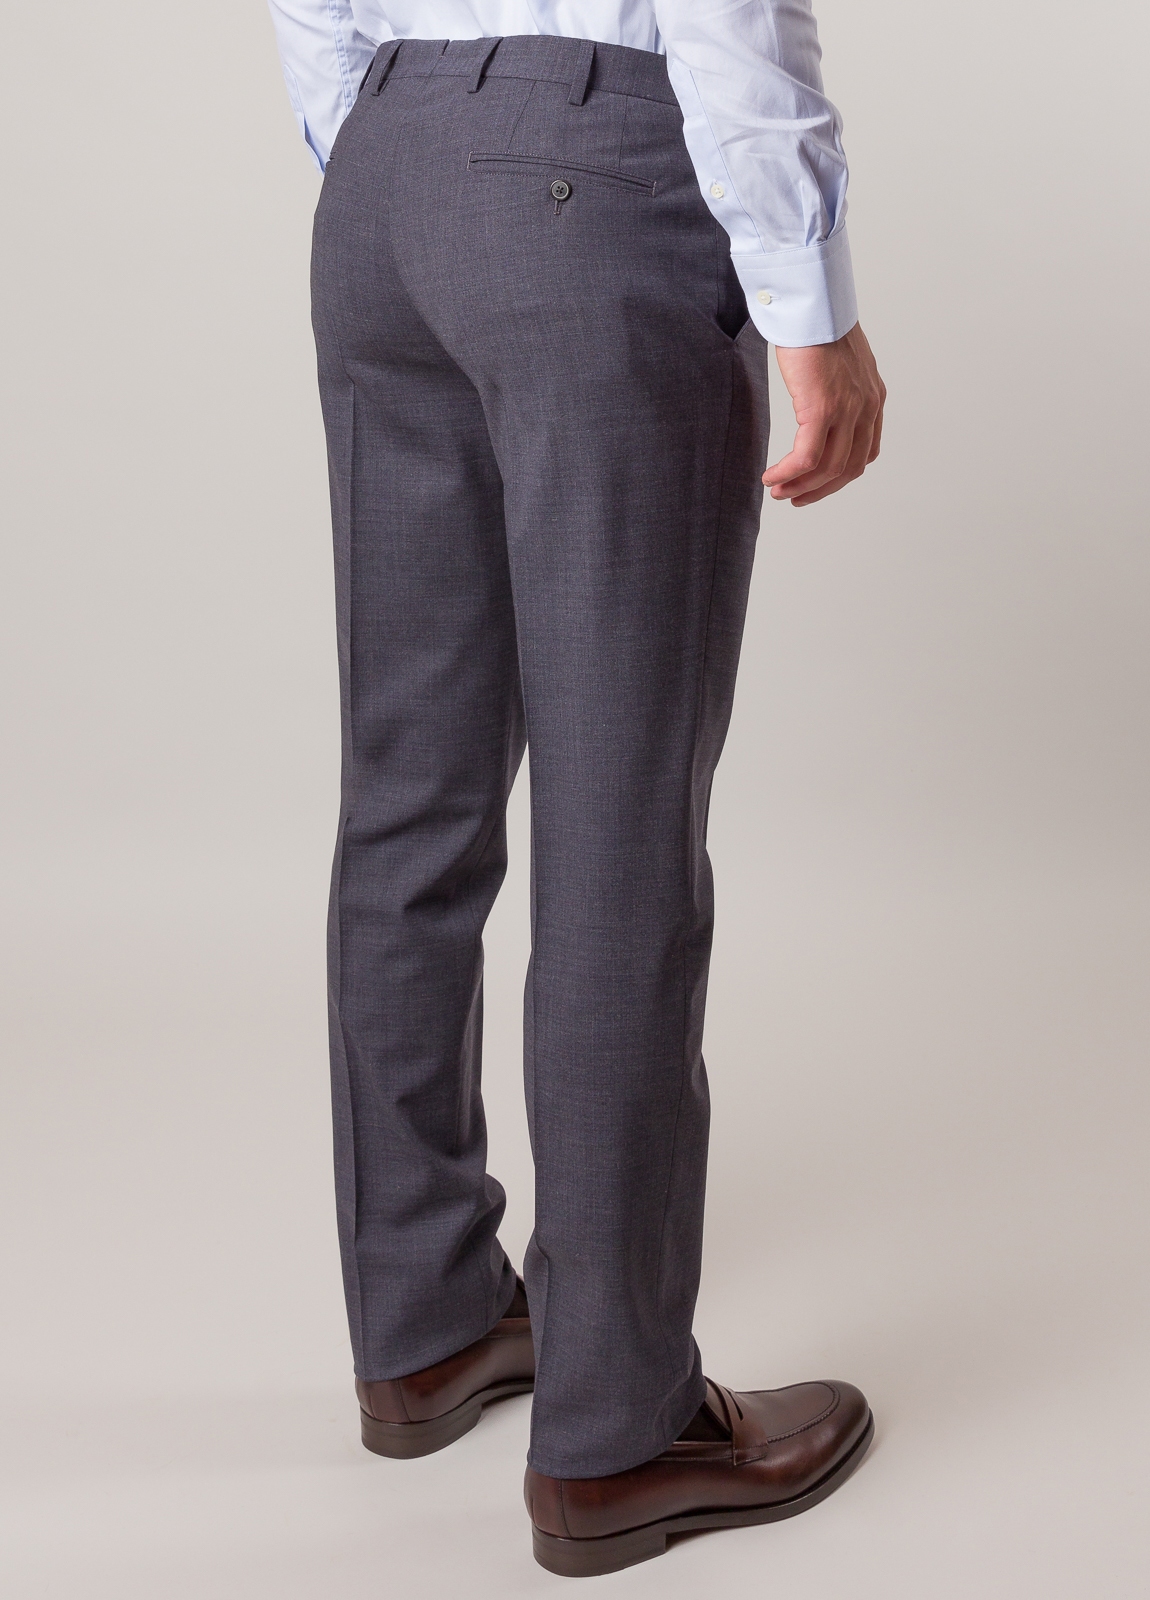 Pantalón vestir FUREST COLECCION color gris - Ítem3